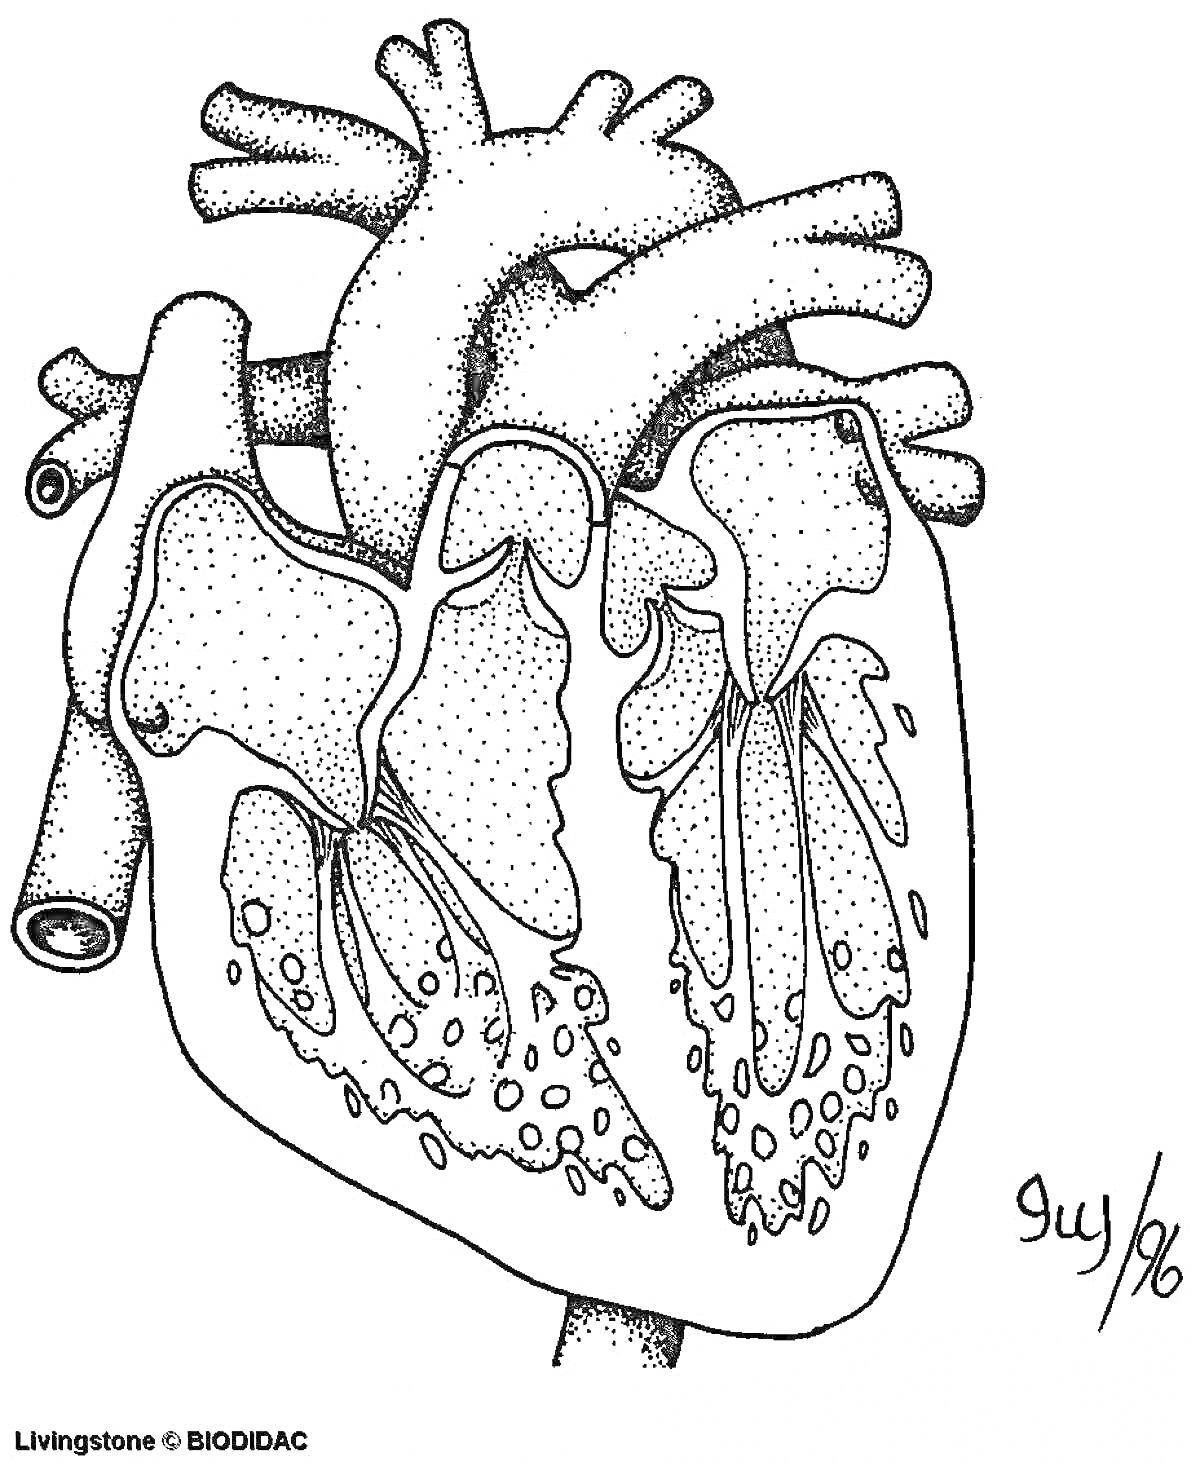 Раскраска анатомическая раскраска с изображением сердца человека, изображены внутренние структуры сердца, включая крупные артерии и вены, камеры сердца, предсердия и желудочки